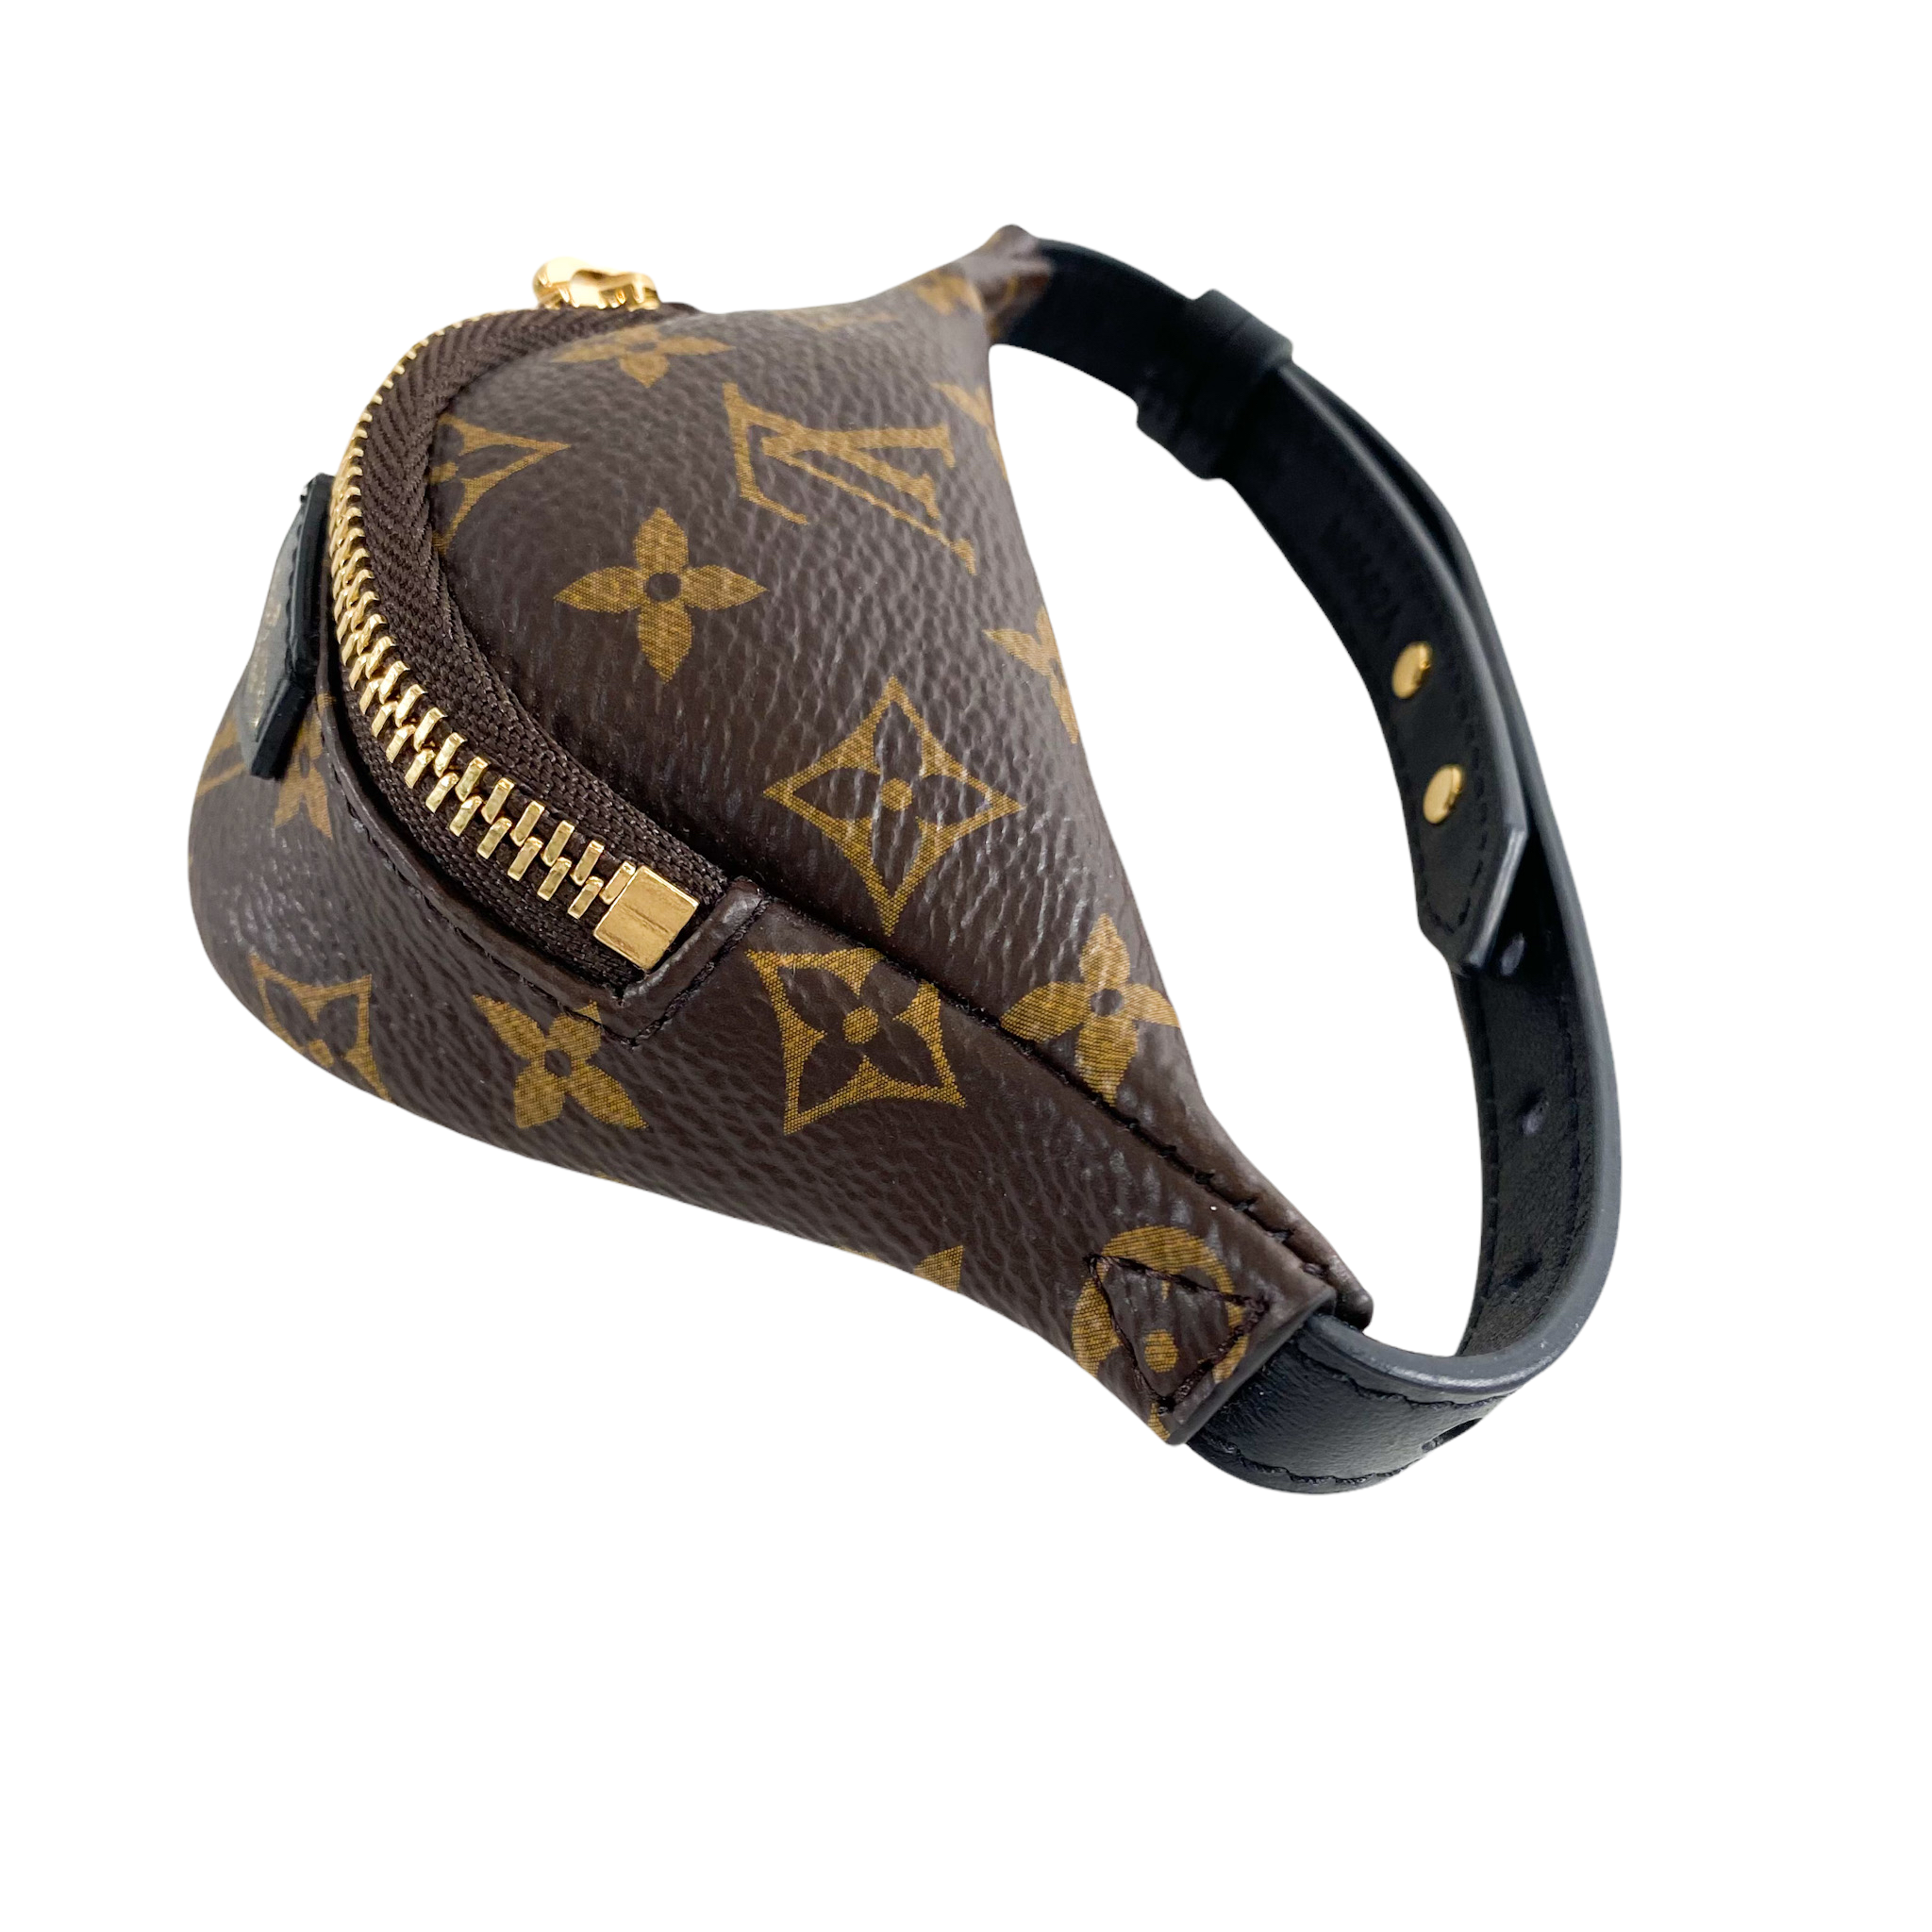 Louis Vuitton Party Bumbag Bracelet - ShopStyle